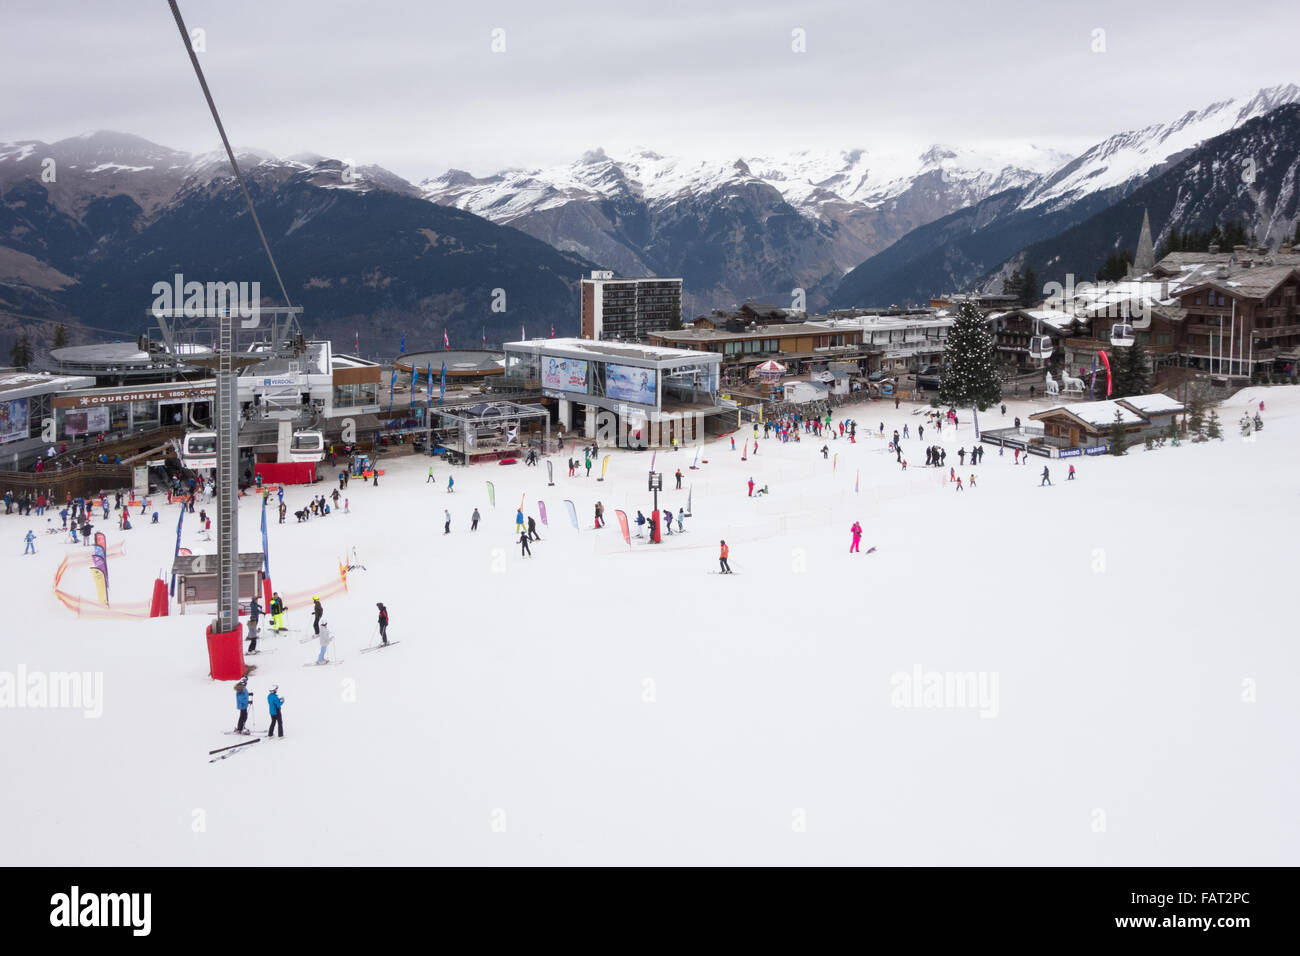 Assurez-vous que la neige Courchevel 1850 station sur le Nouvel An pendant une période de faible neige en hiver dans les Alpes françaises - 2015 Banque D'Images